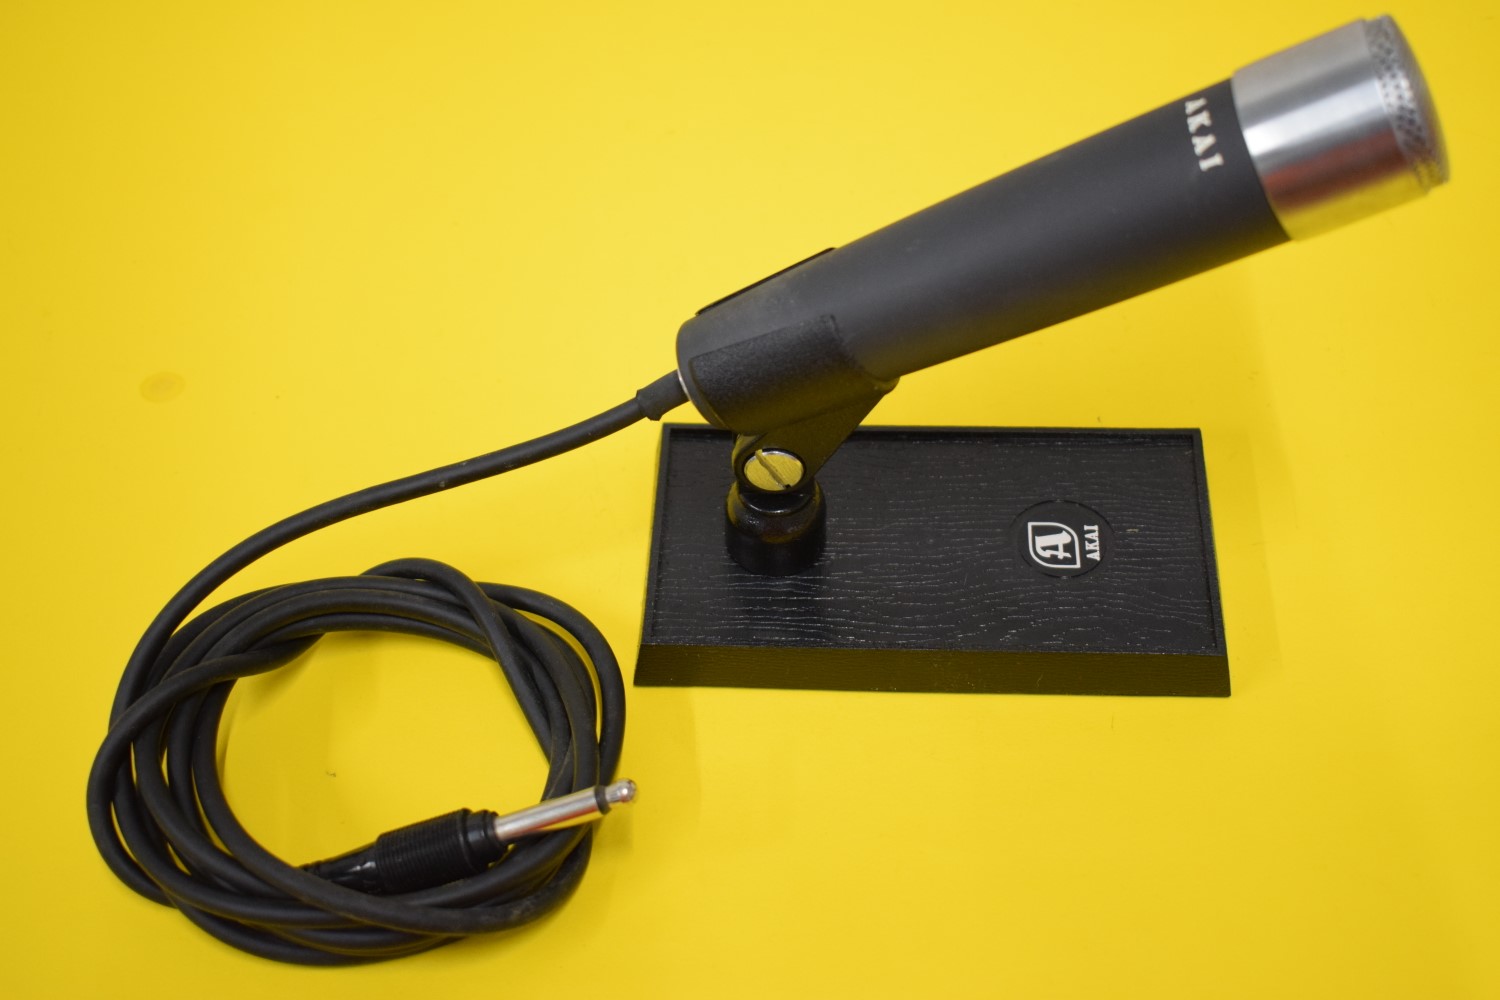 Akai DM-13 Mikrofon – In Originale Verpackung